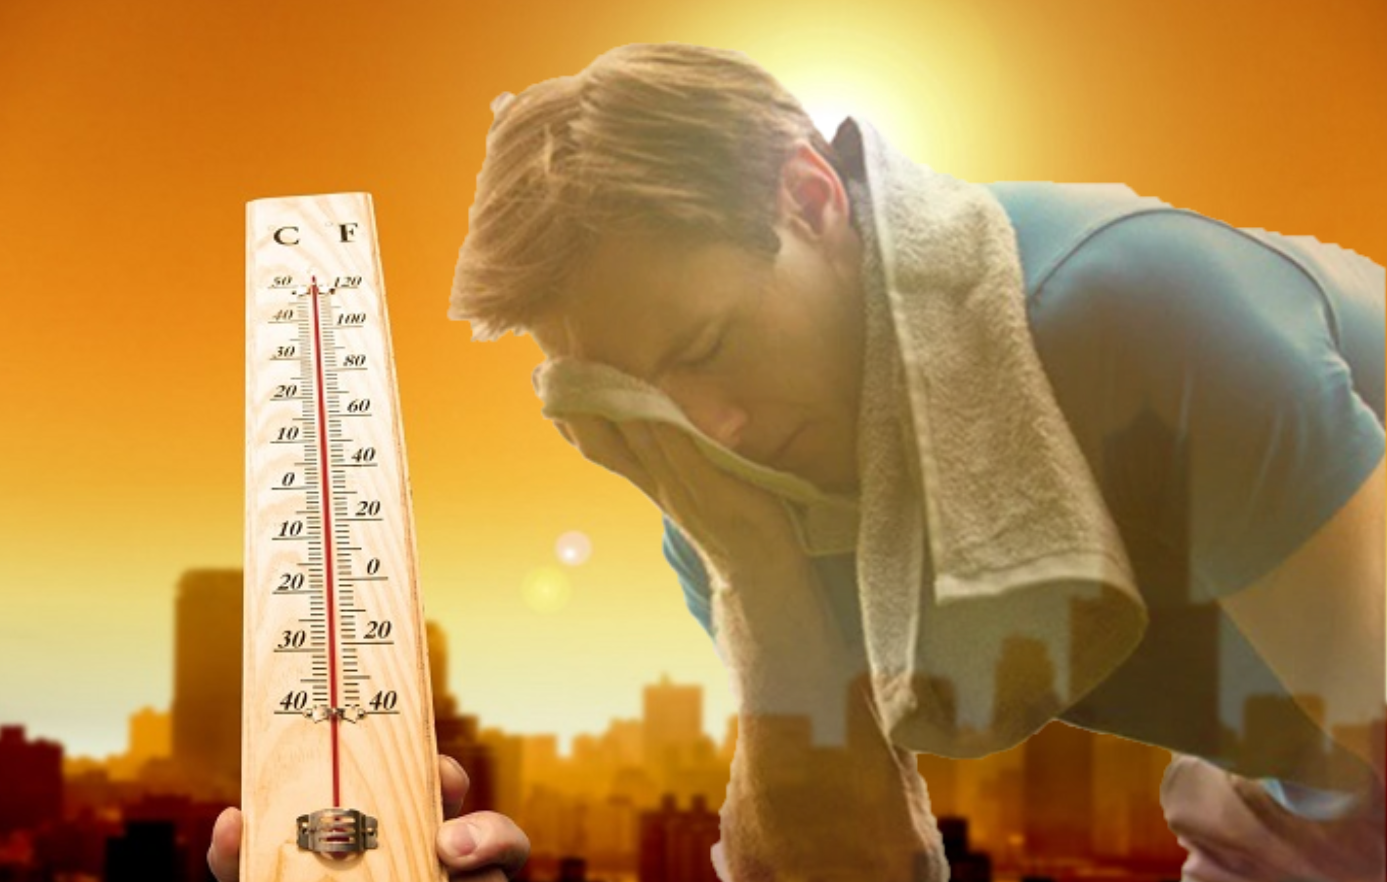 Con người cũng dễ bị sốc nhiệt trong những ngày nắng nóng